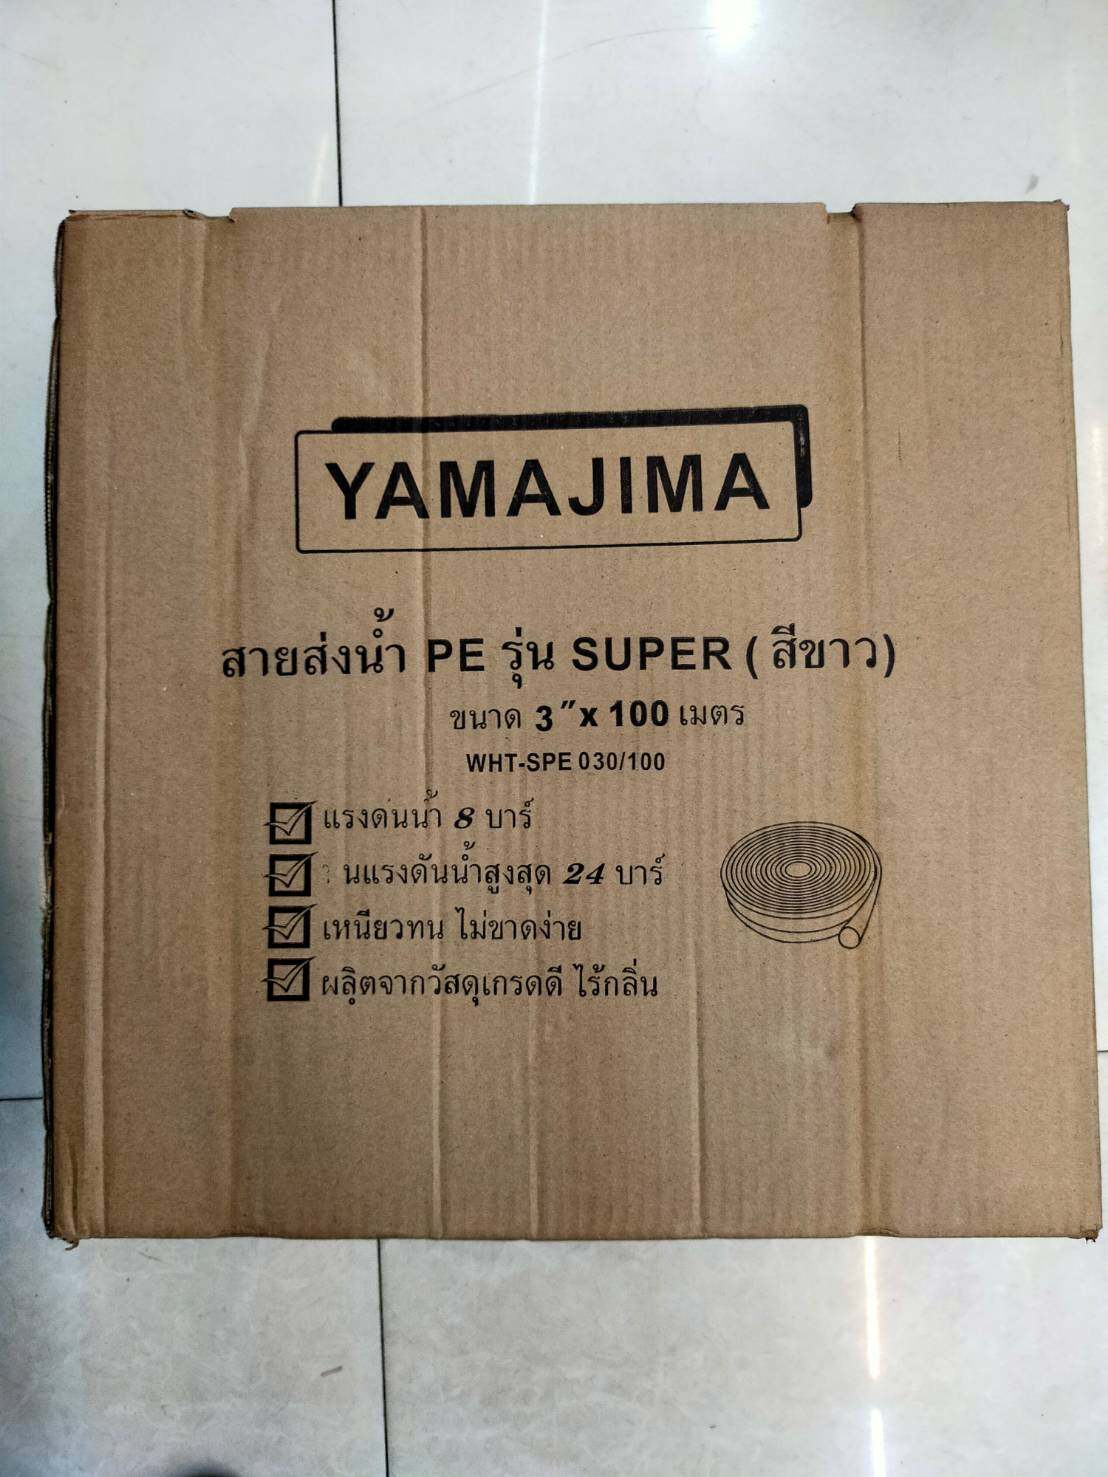 YAMAJIMA 🇹🇭 สายส่งน้ำ PE (24Bars) ขนาด 3นิ้ว ยาว100m. รุ่น SUPER สีขาว 1ม้วน สายน้ำ สายดับเพลิง ใช้ในงานเกษตรทั่วไป อุปกรณ์เกษตร สวน ระบบน้ำ